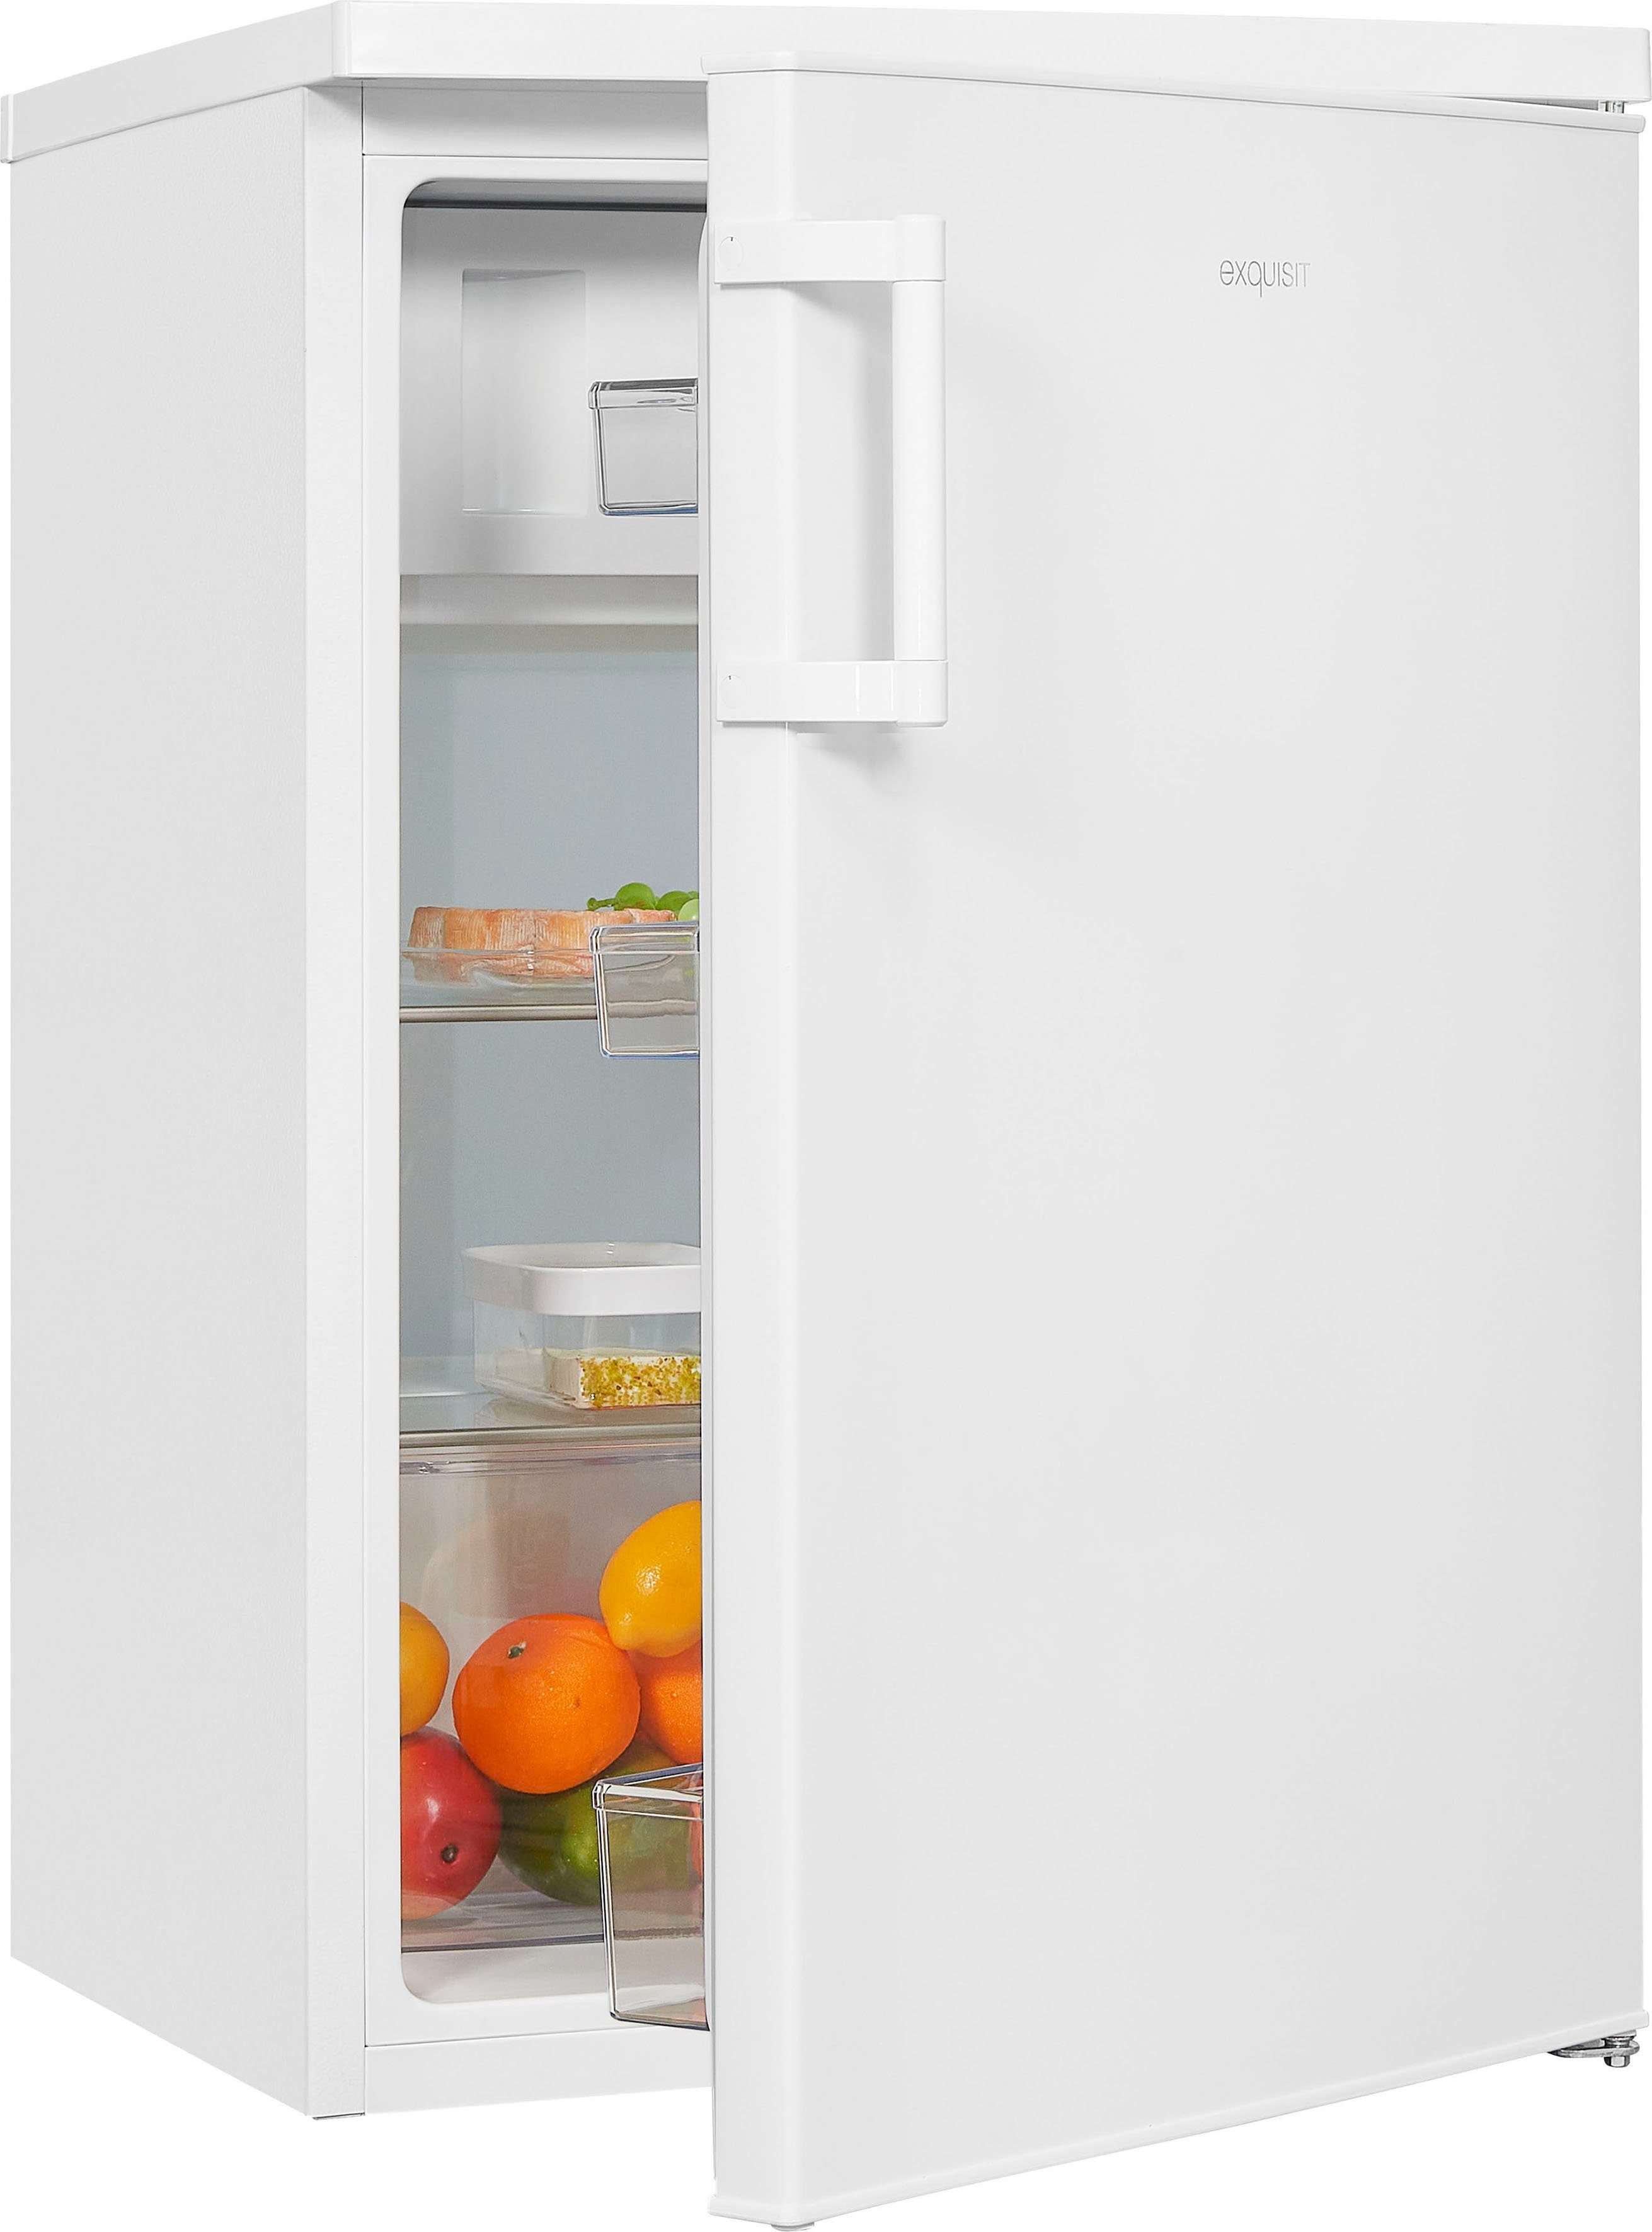 exquisit Kühlschrank KS16-4-H-010E weiss, 85 cm hoch, 56 cm breit,  LED-Licht - helle und effiziente Ausleuchtung des Innenraums | Kühlschränke